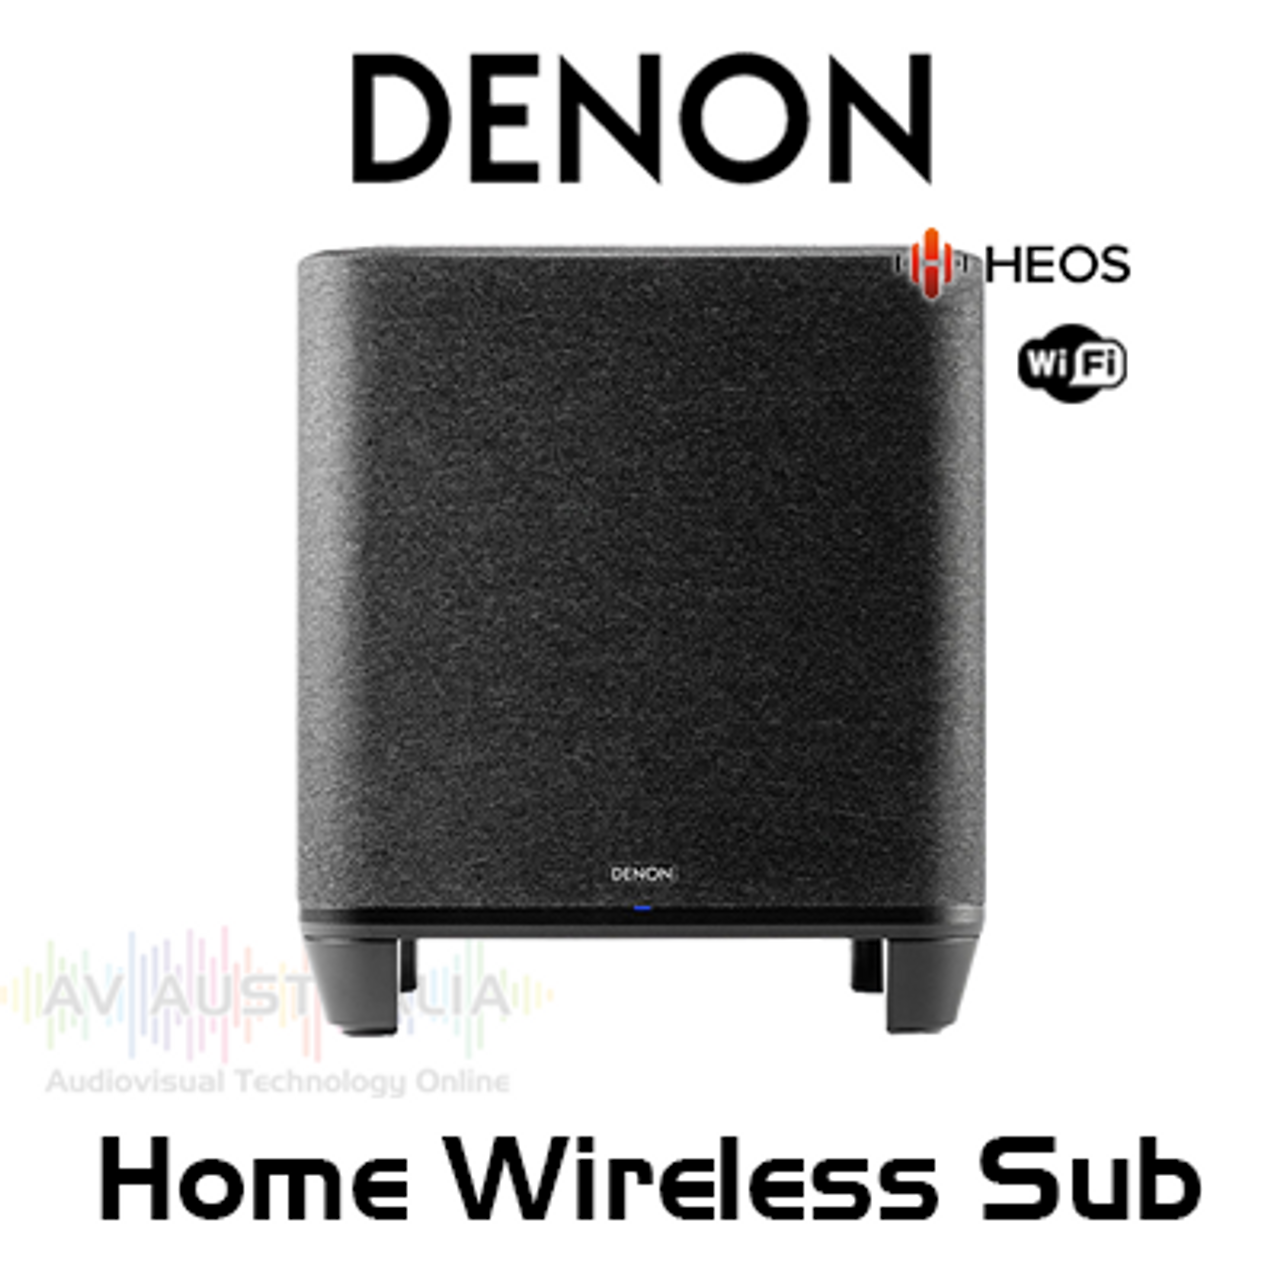 Denon Home Wireless Subwoofer Online HEOS with AV Built-in Australia 